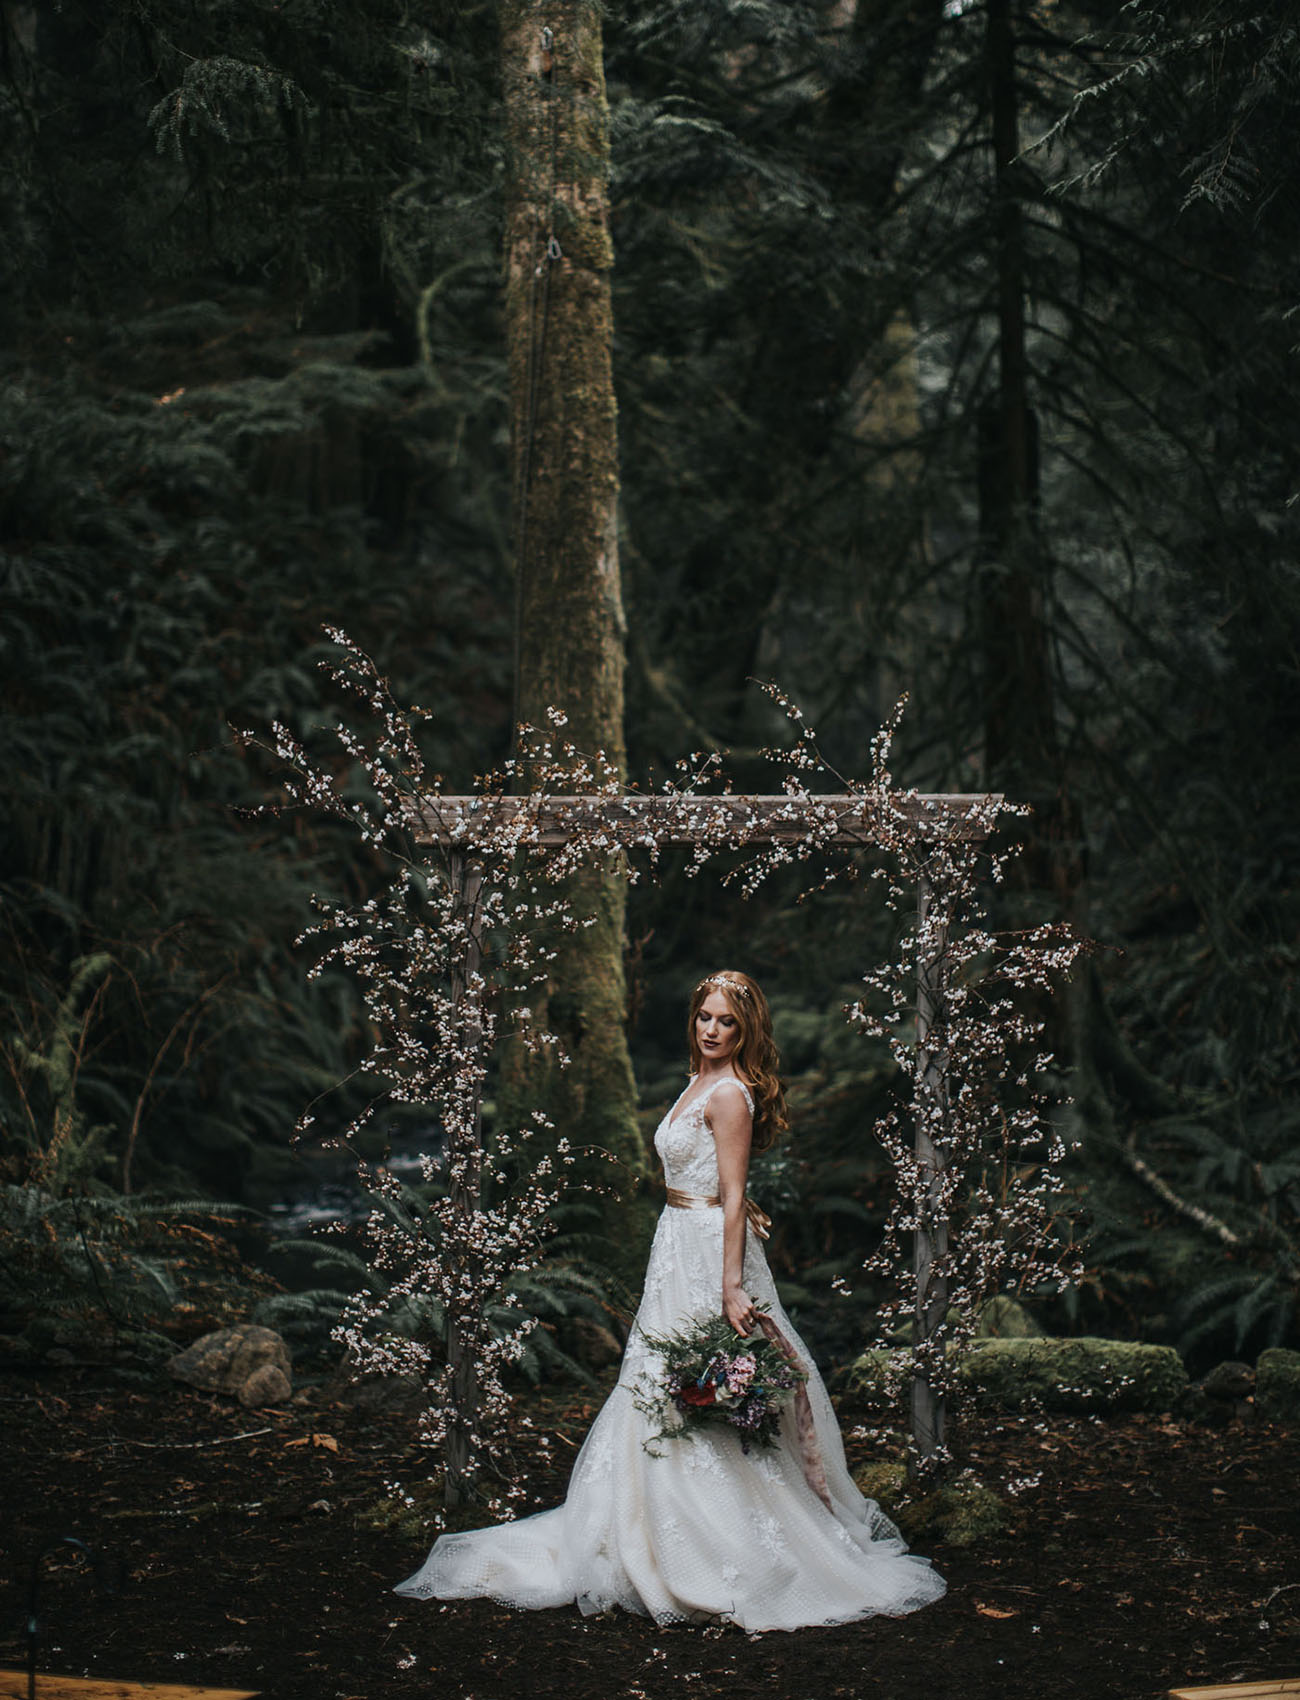 Fairytale Bride